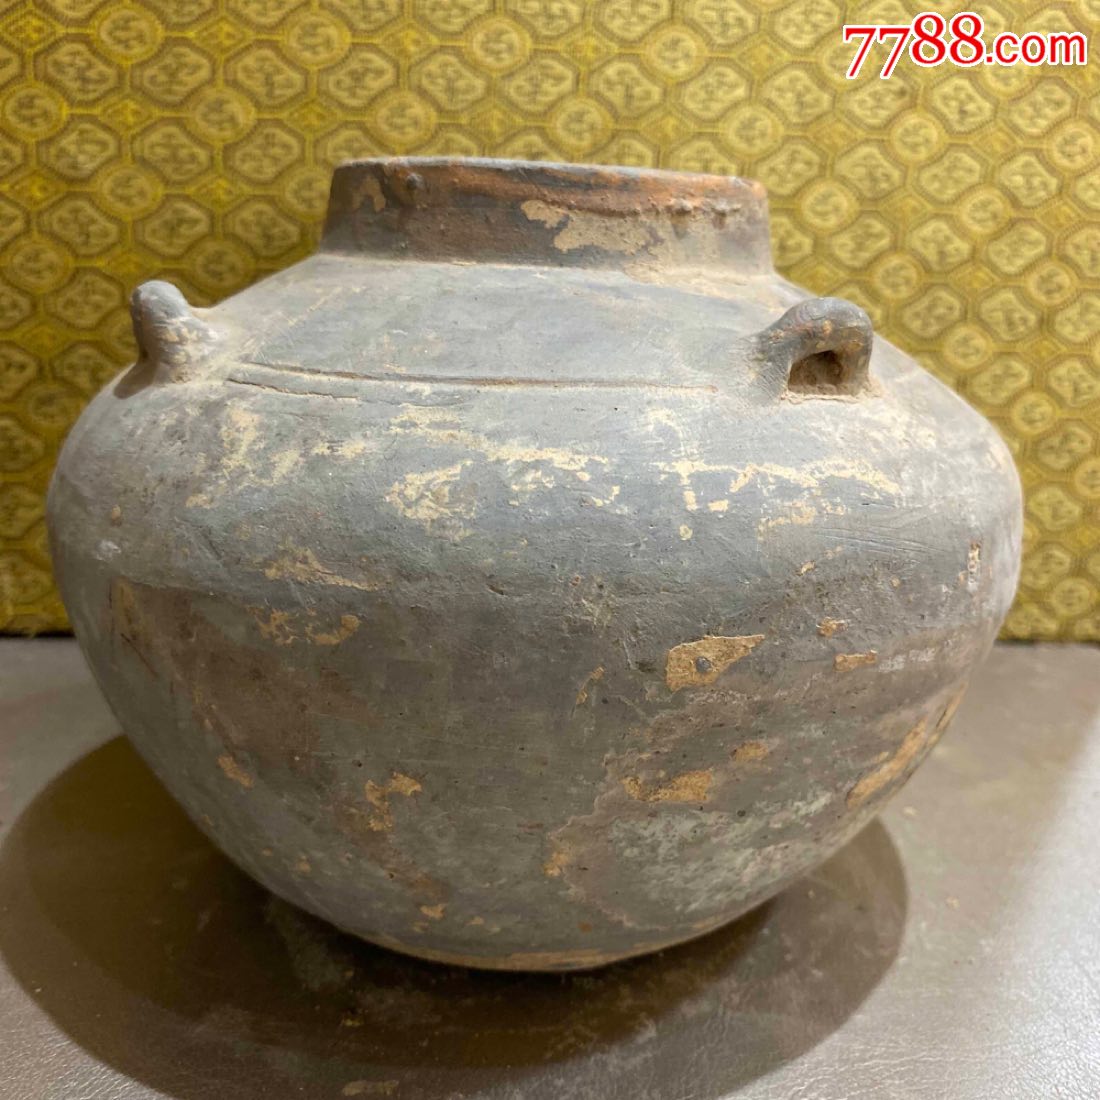 古玩陶器汉代陶罐四系罐一个_价格98.